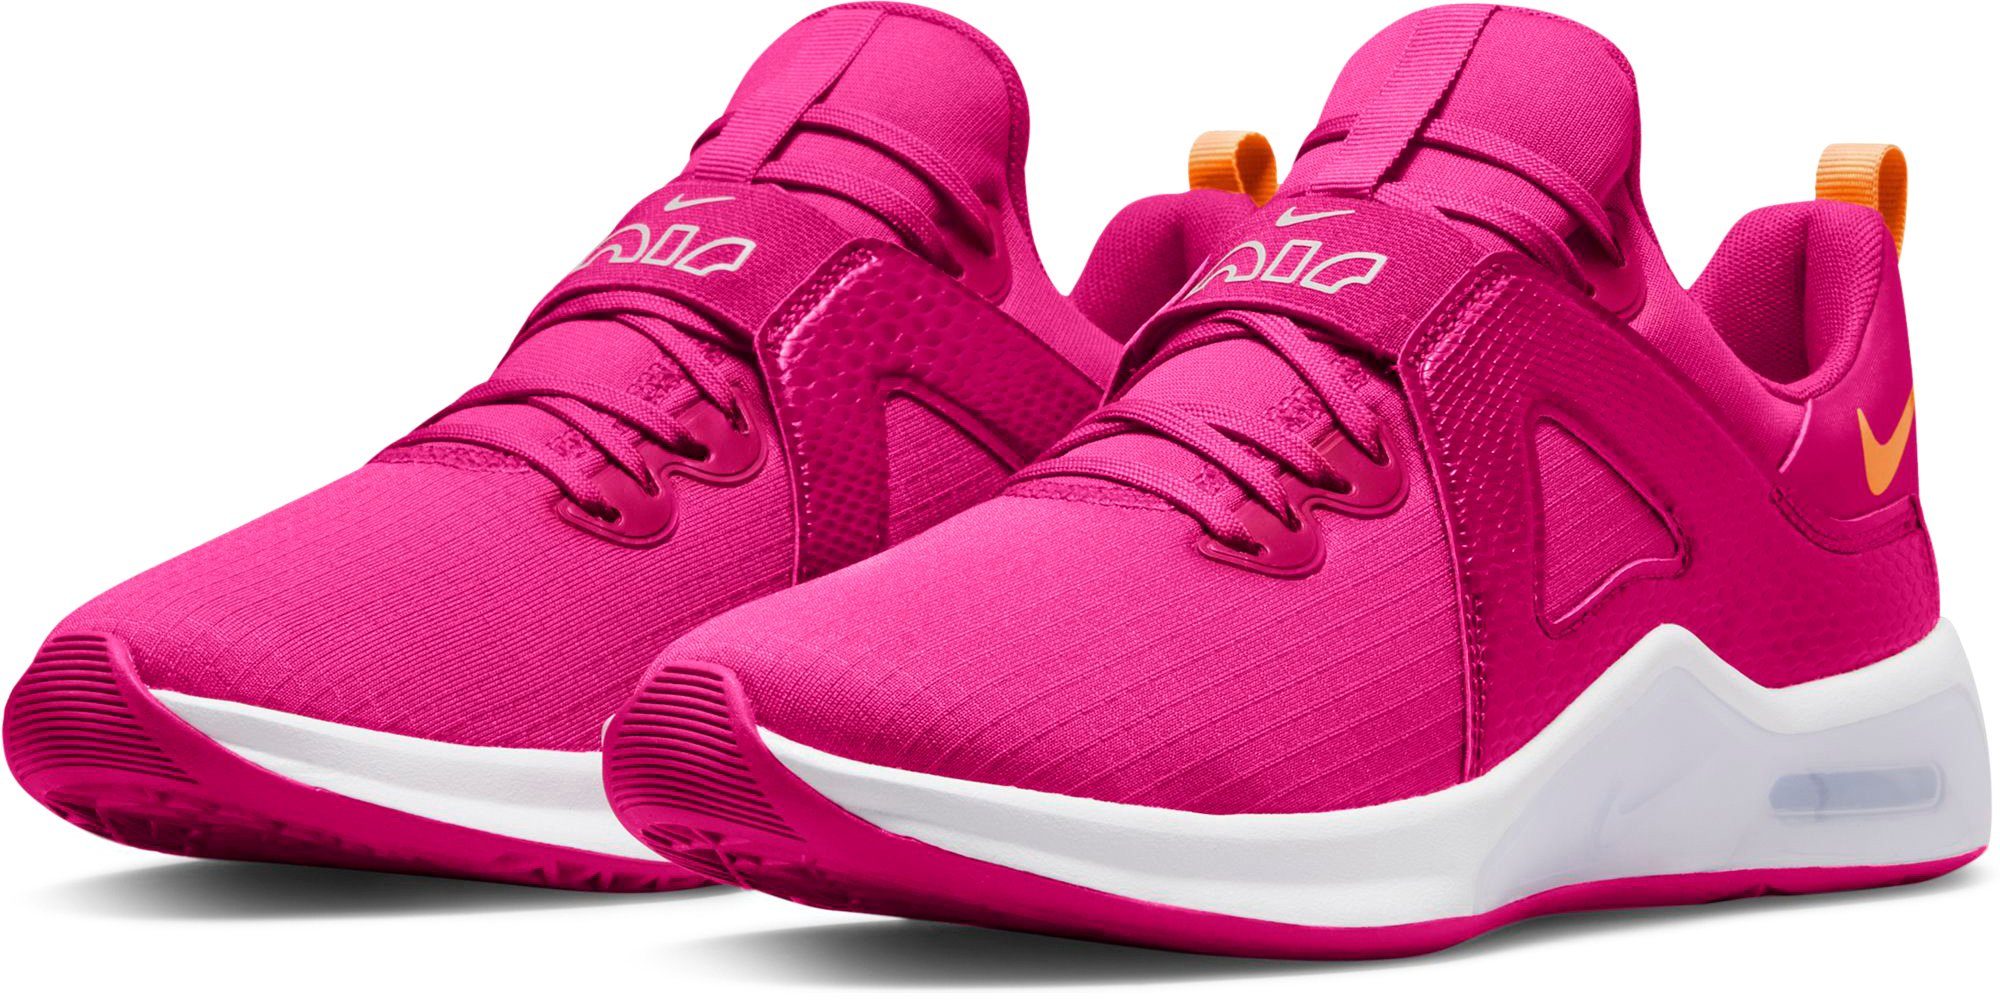 Pinke Nike Schuhe online kaufen » Rosa Nike Schuhe | OTTO